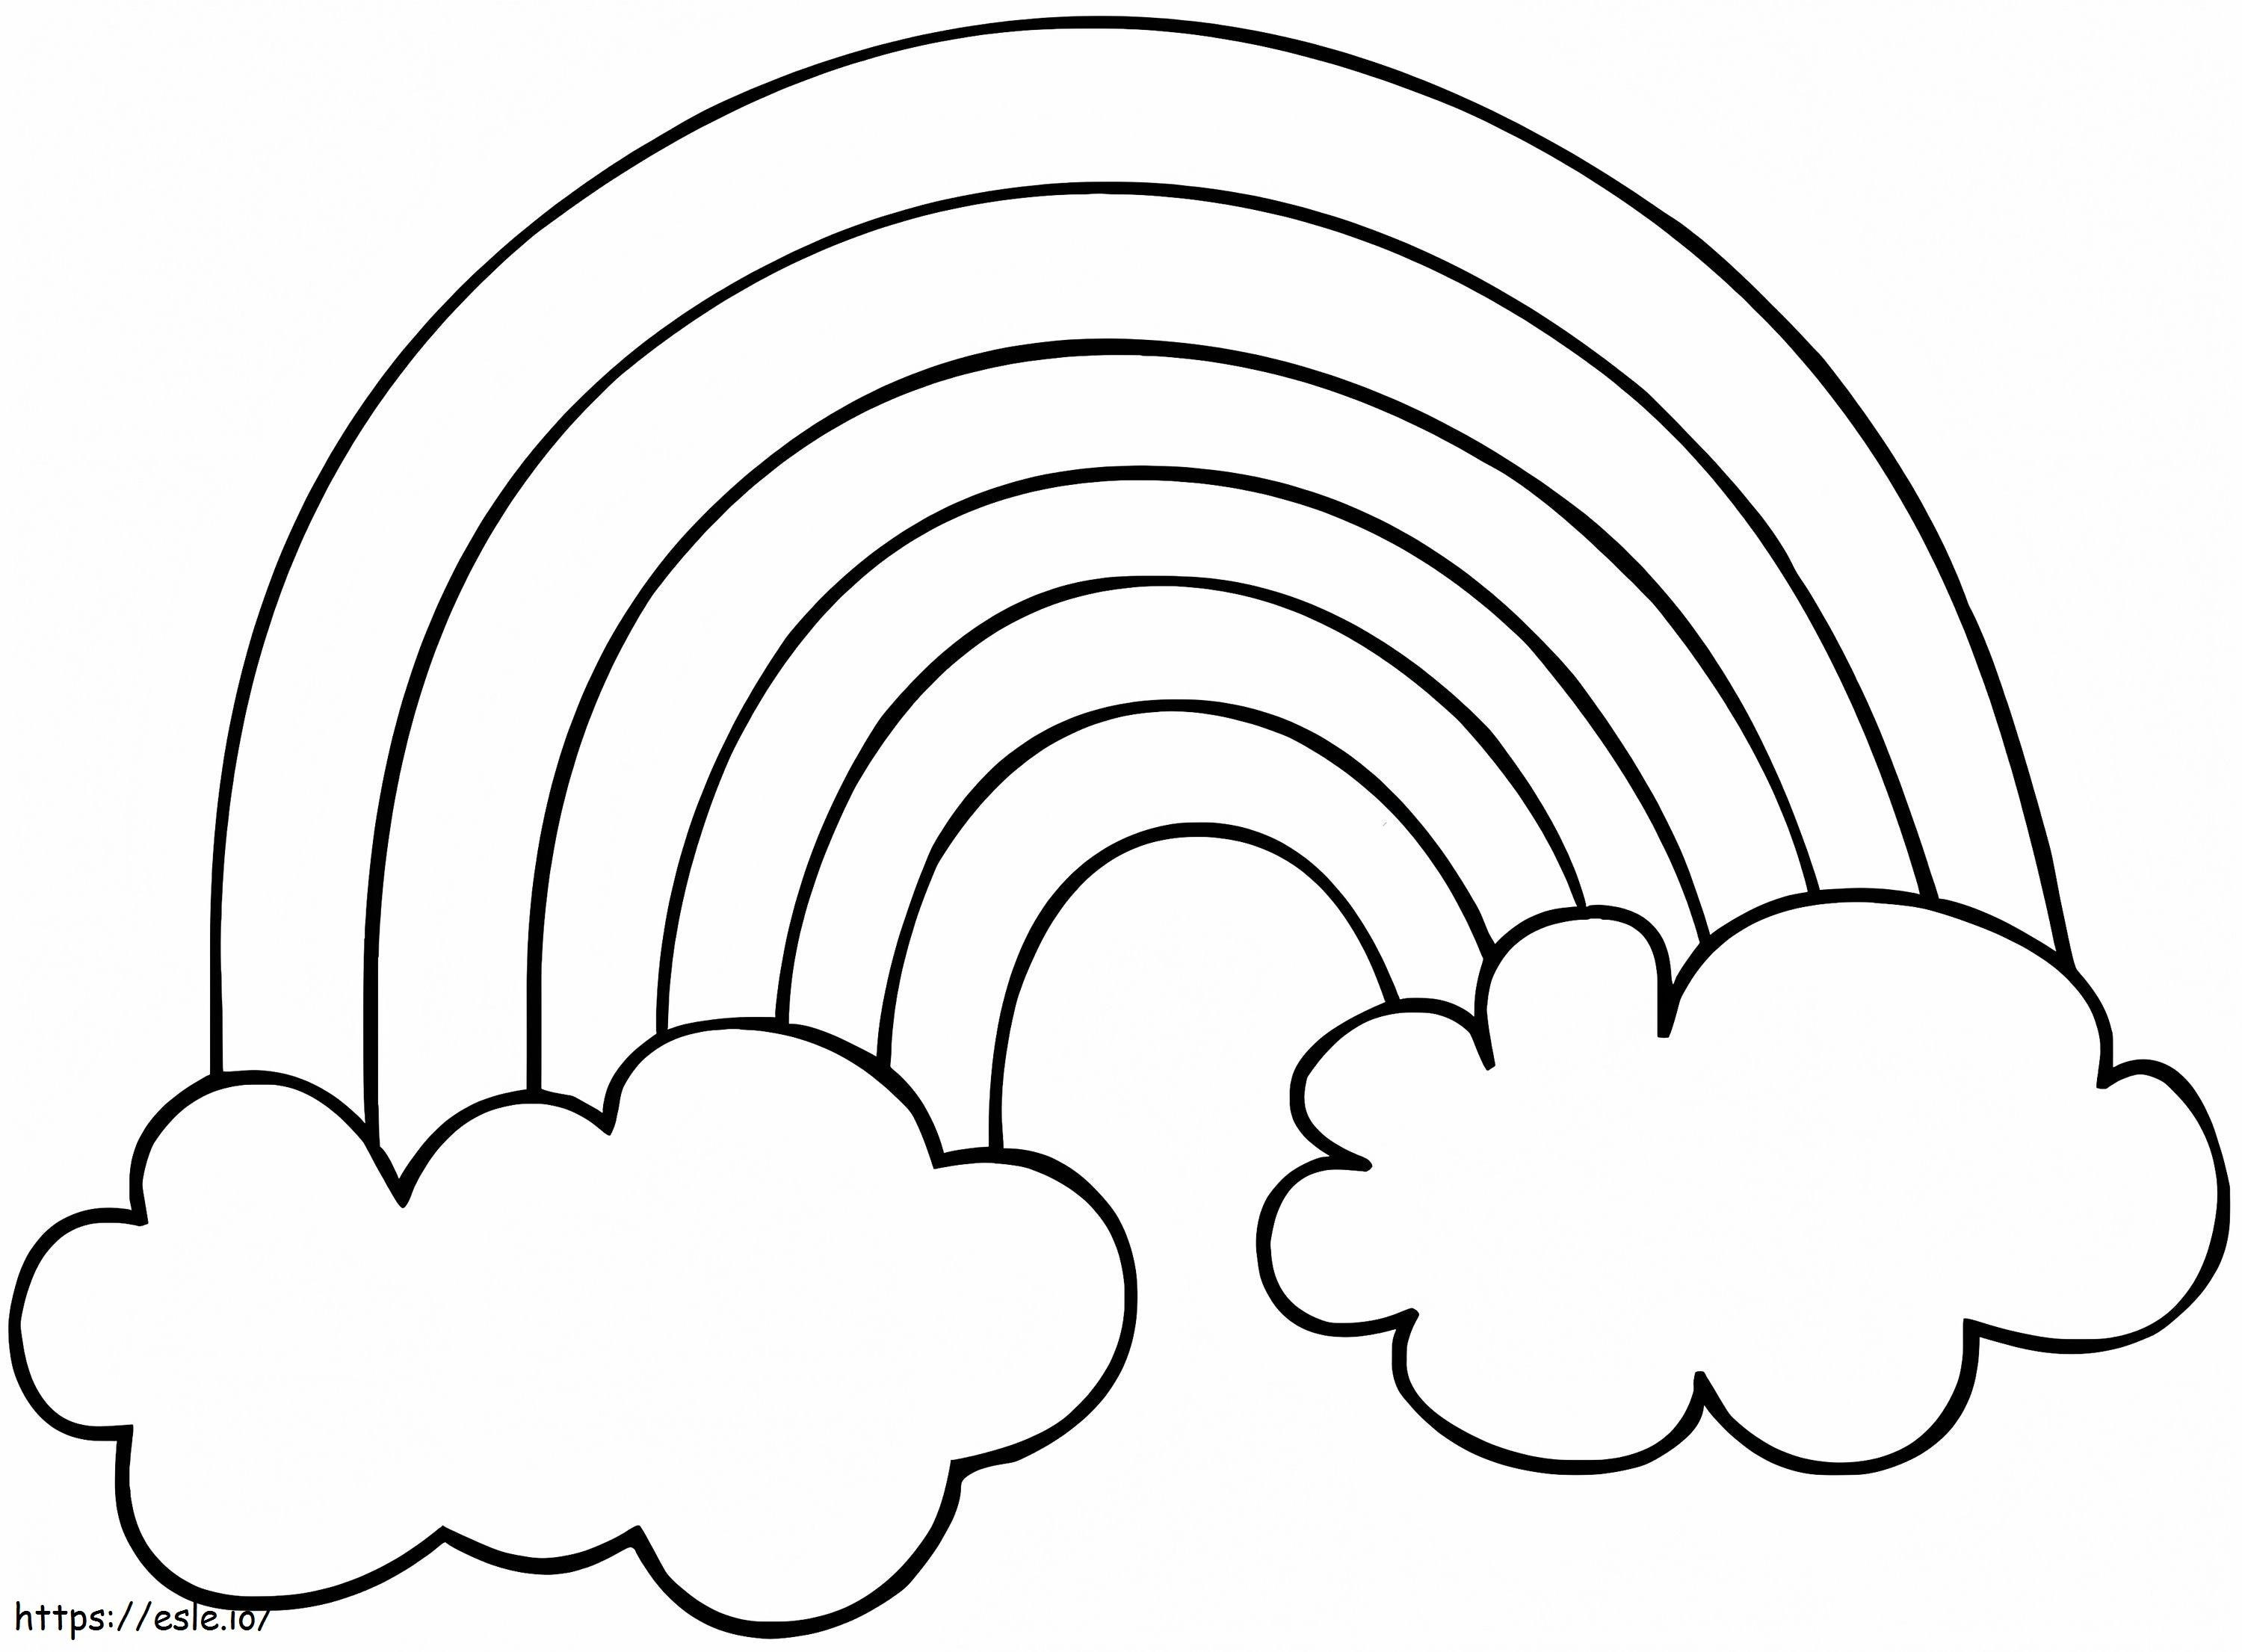 Coloriage Arc-en-ciel facile avec des nuages à imprimer dessin